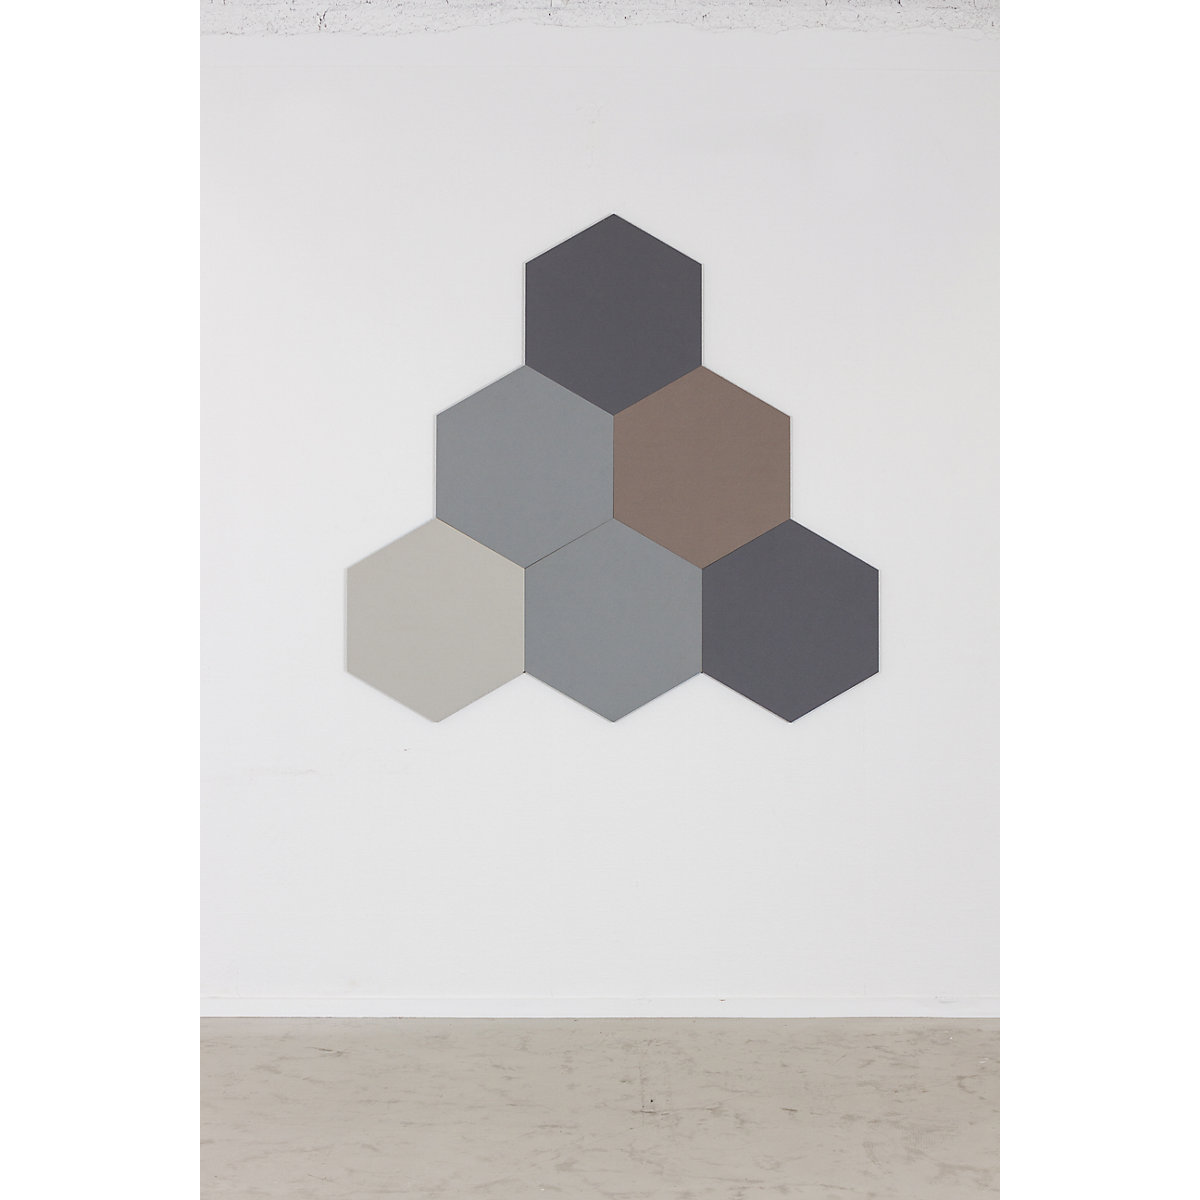 Quadro de pinos com design hexagonal – Chameleon (Imagem do produto 21)-20